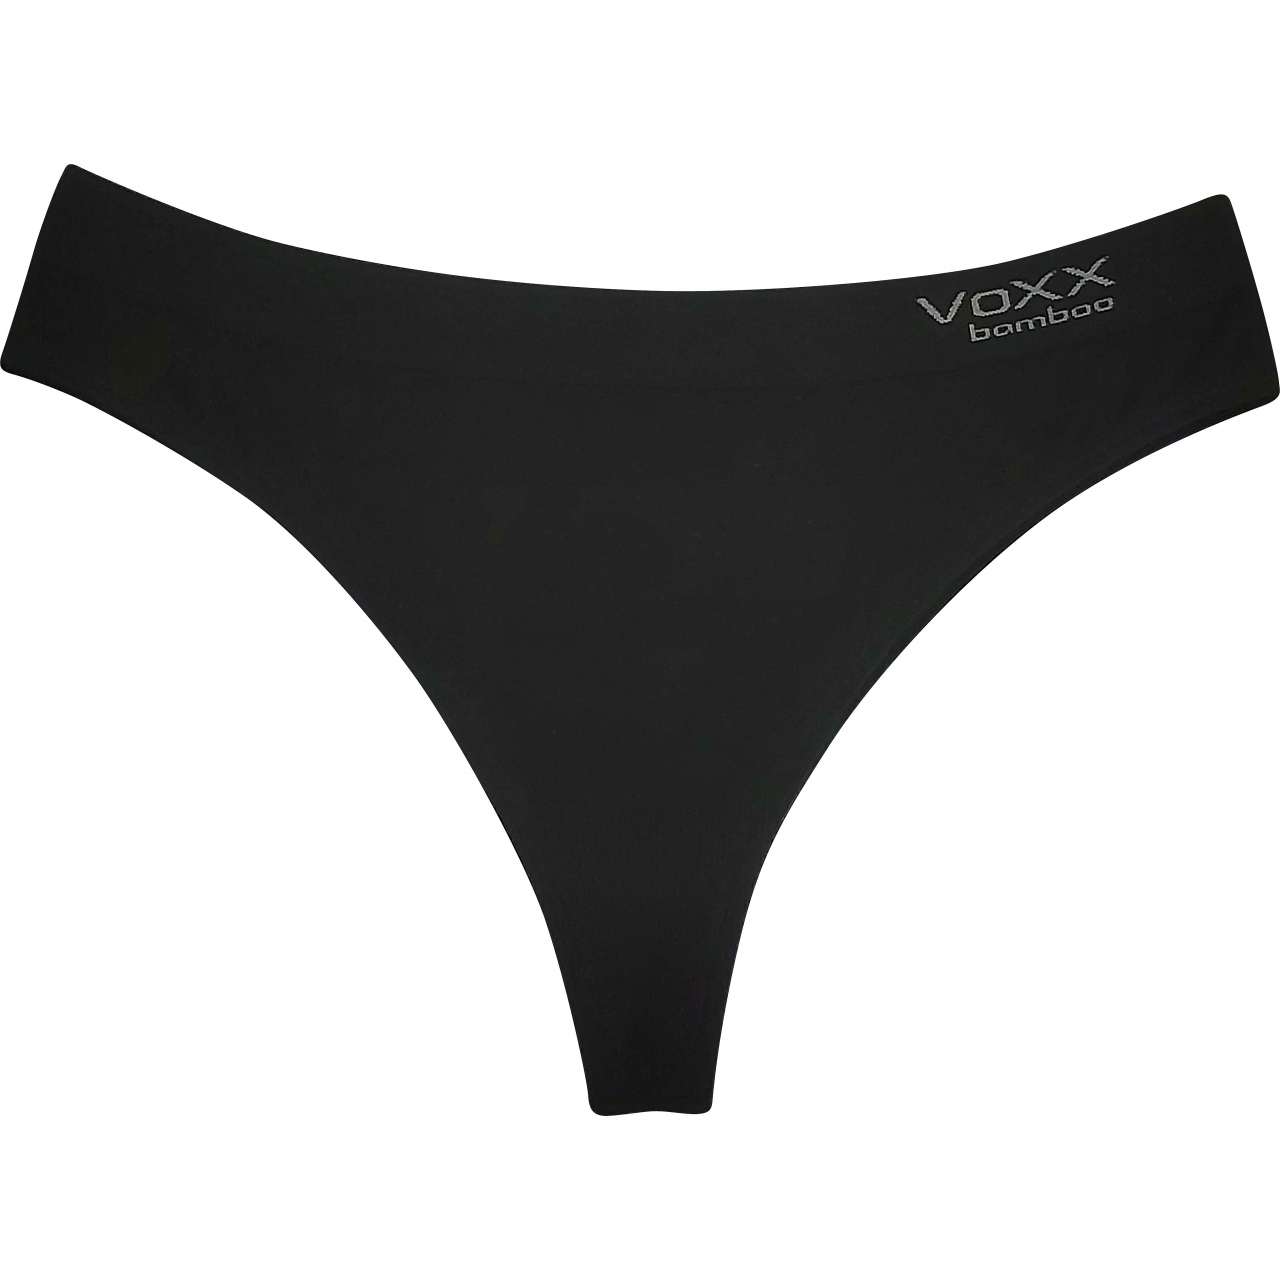 Kalhotky dámské Voxx BambooSeamless 006 - černé, L/XL